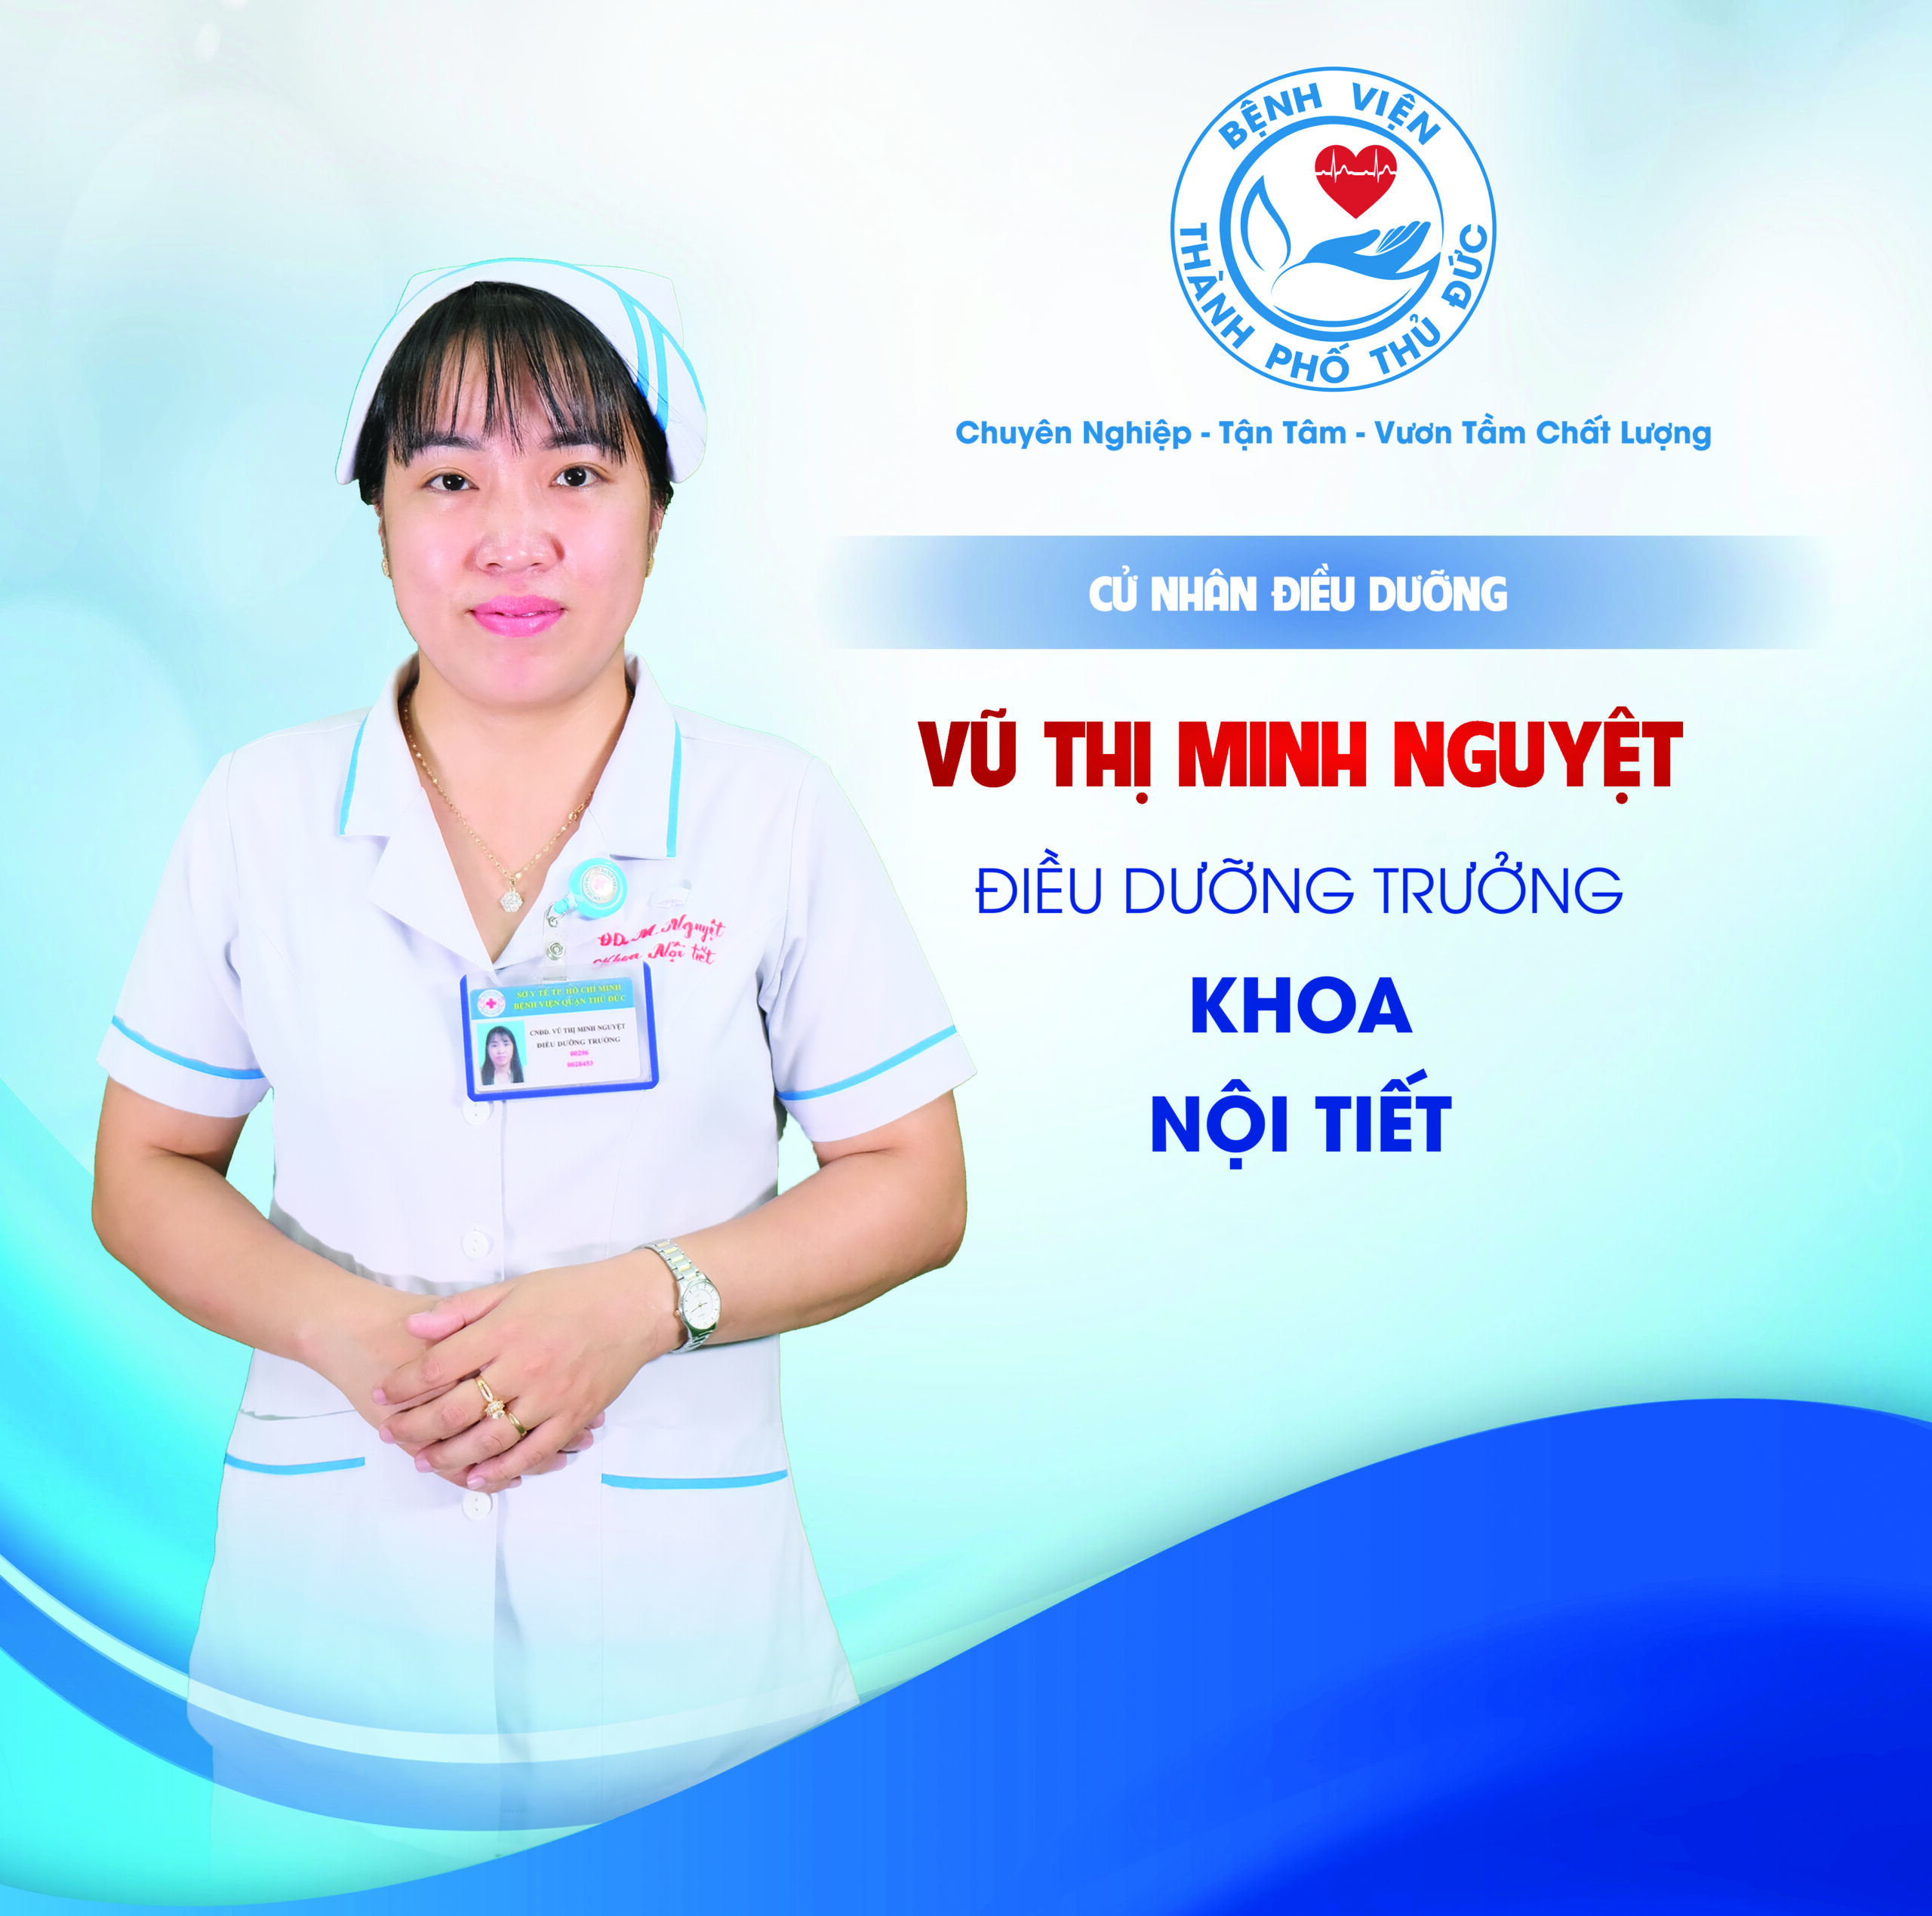 CNĐD. Vũ Thị Minh Nguyệt - Điều dưỡng Trưởng khoa Nội tiết